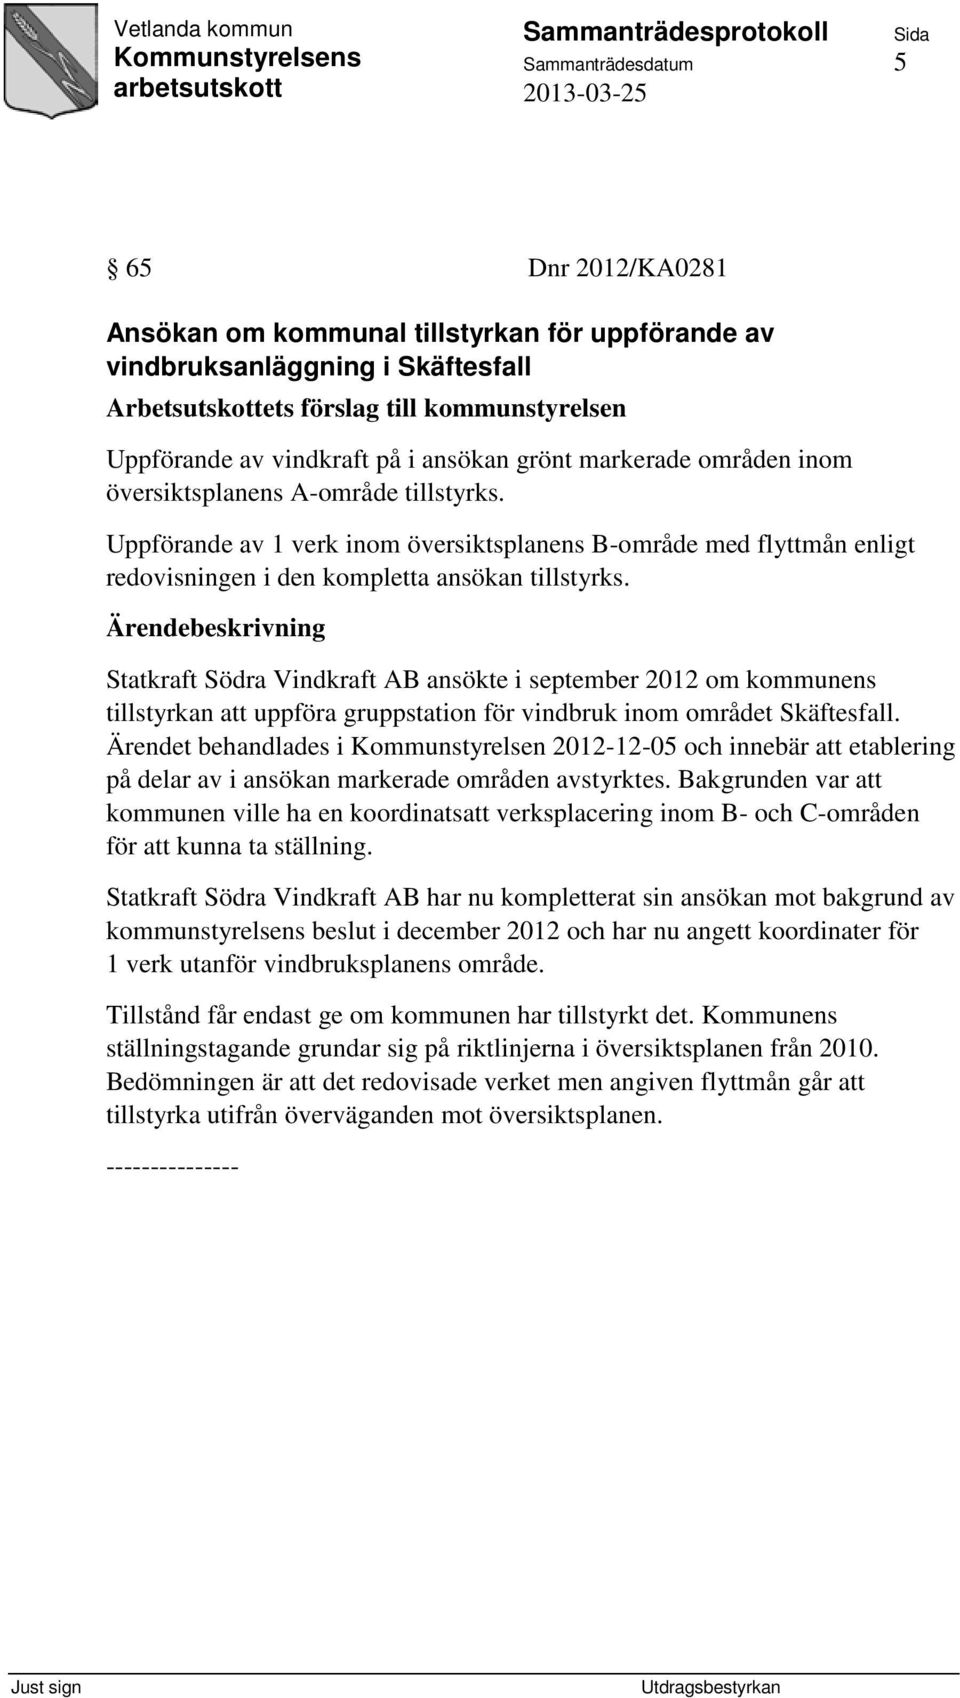 Statkraft Södra Vindkraft AB ansökte i september 2012 om kommunens tillstyrkan att uppföra gruppstation för vindbruk inom området Skäftesfall.